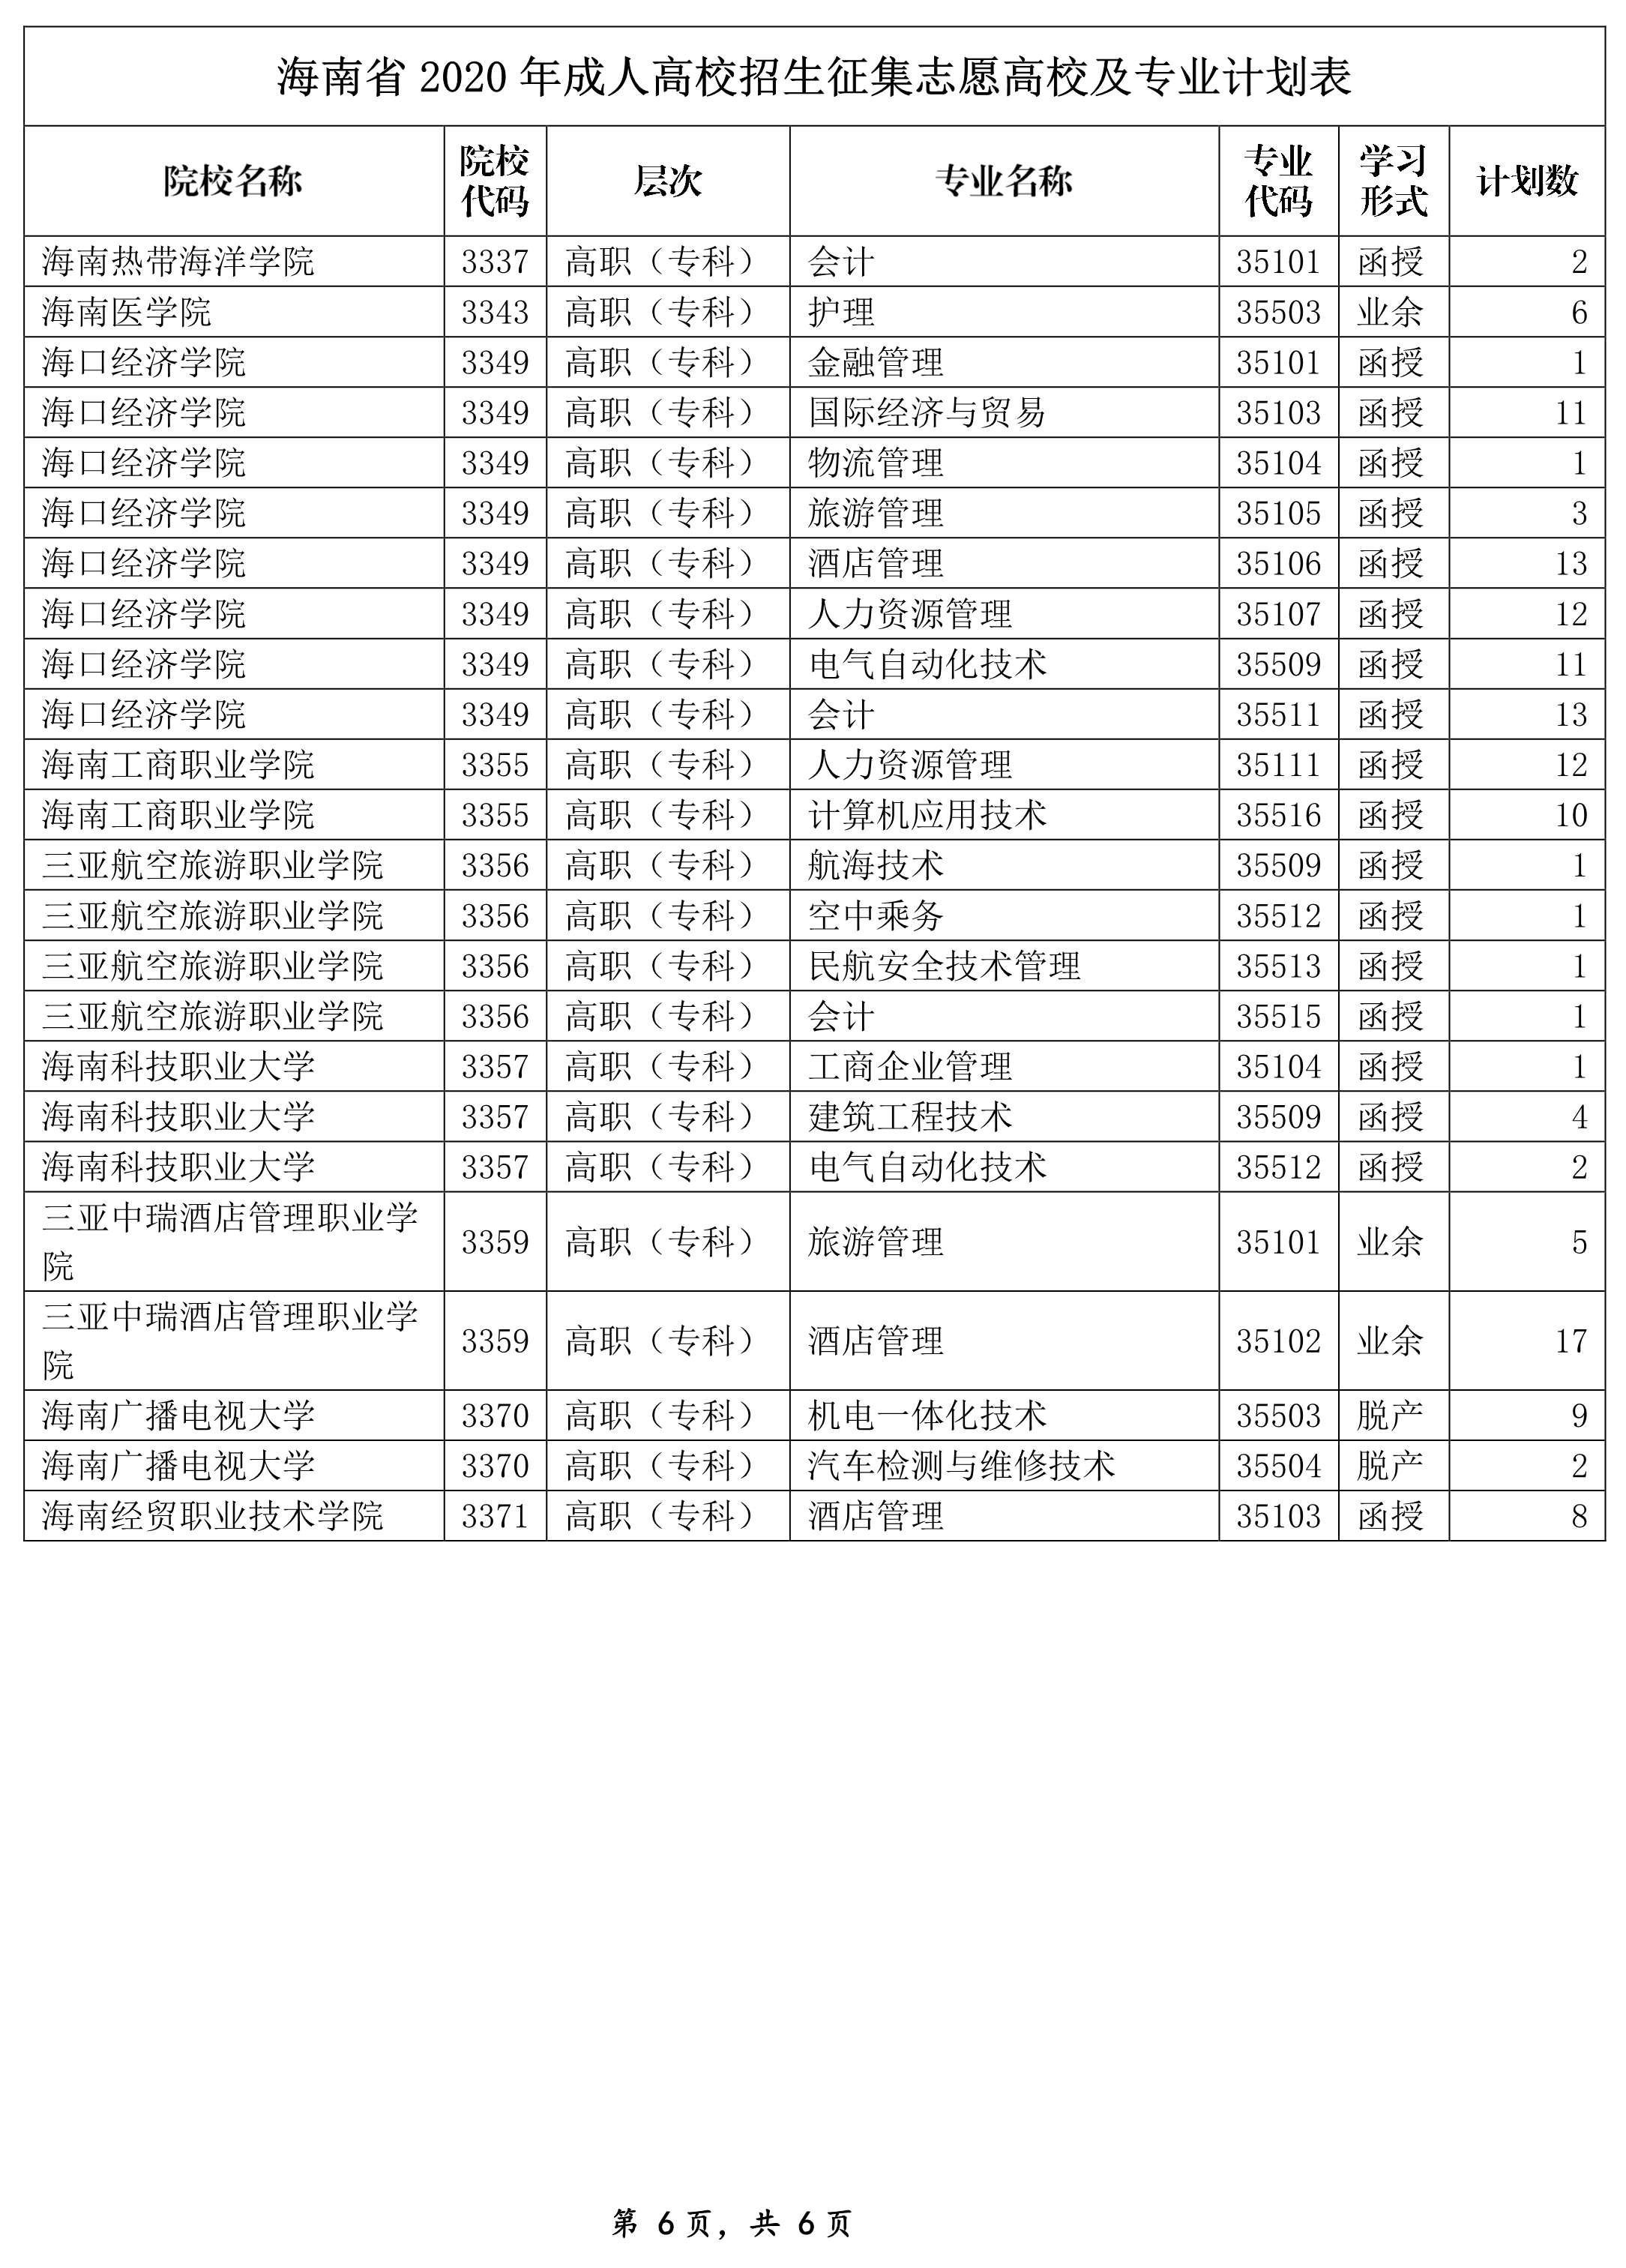 海南省2020年成人高校招生征集志愿高校及专业计划表